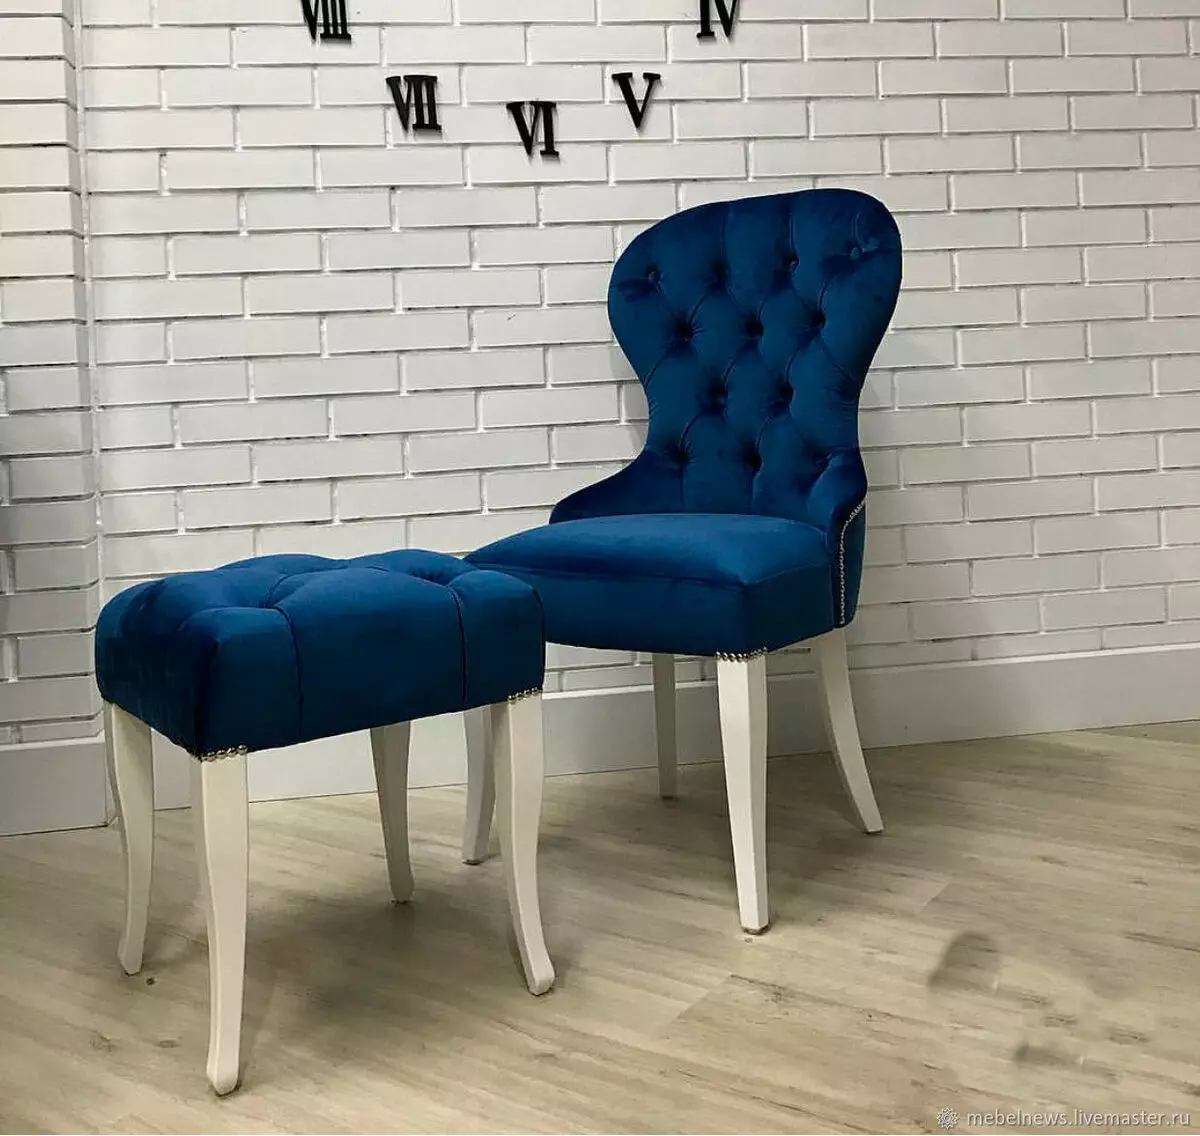 صندلی های نرم برای اتاق نشیمن: صندلی های صندلی، مدل های نرم پشت و دستگیره و سایر گزینه ها 9751_8